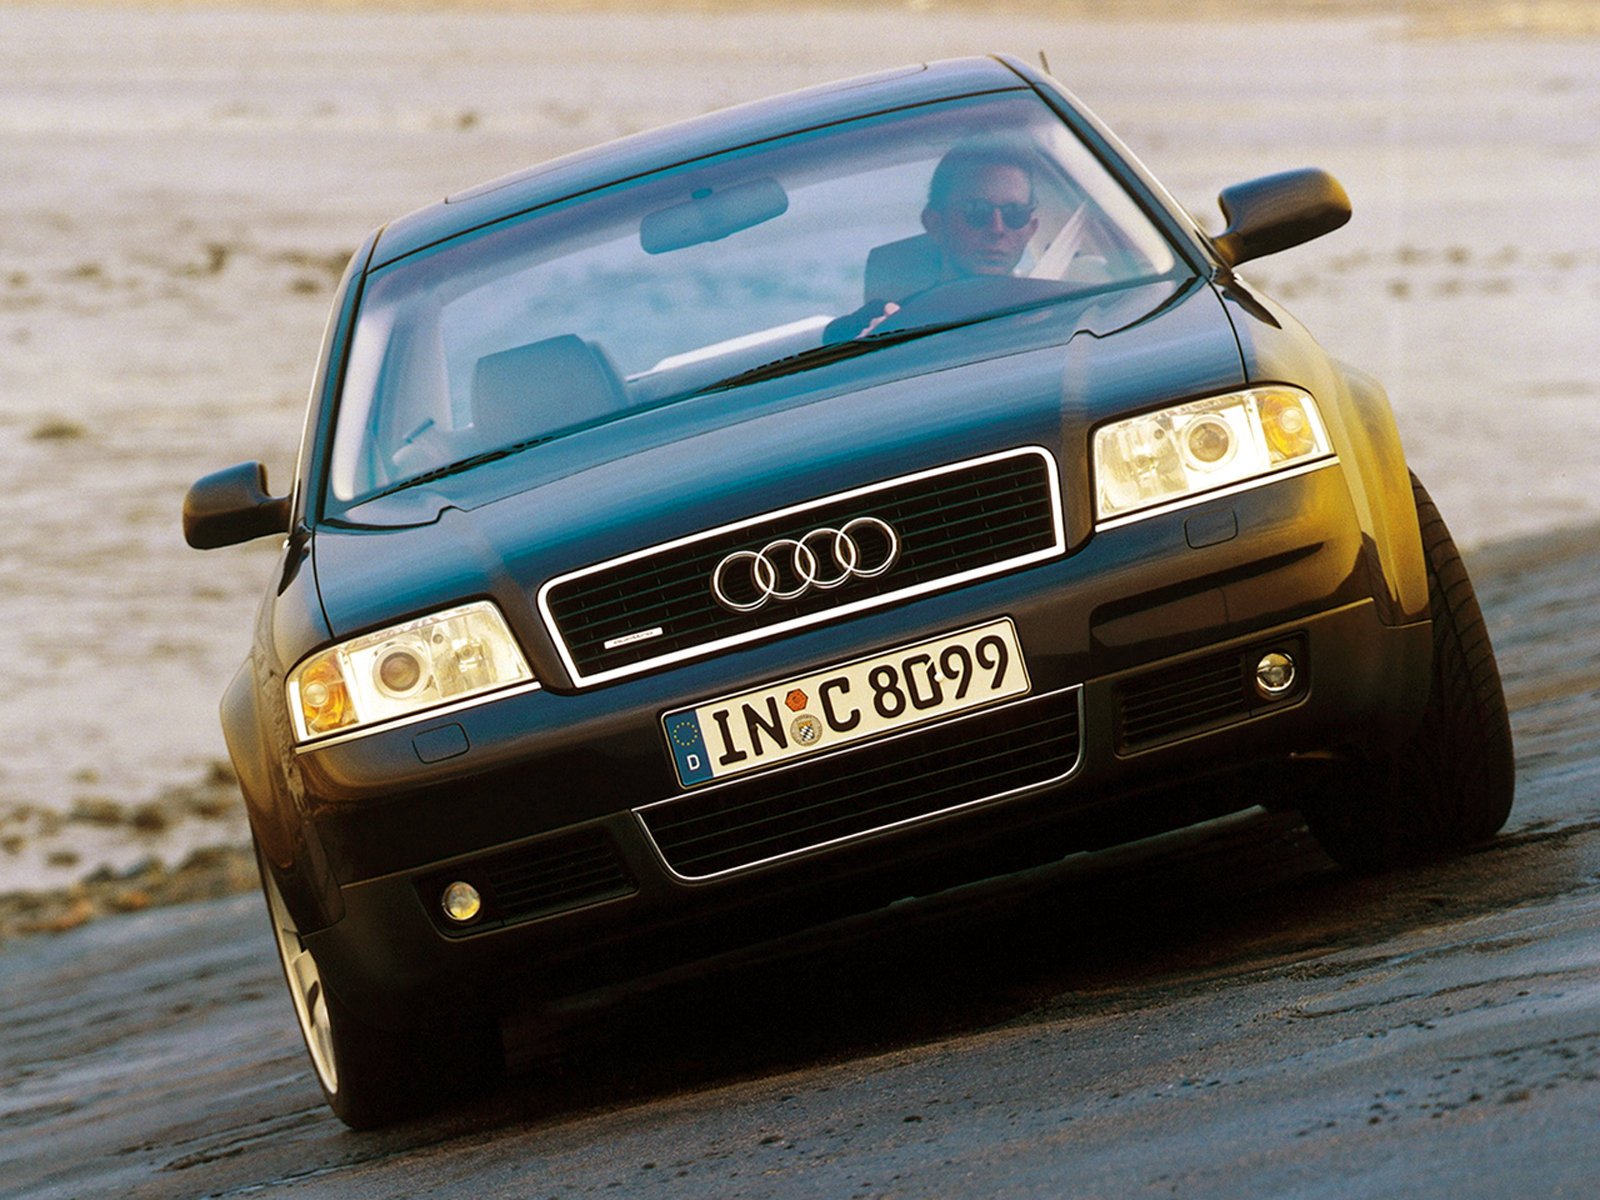 Купить ауди в орле. Audi a6 c5 1999. Аууда6с5 кватро. Audi a6 с5. Ауди а6 с5 кватро.